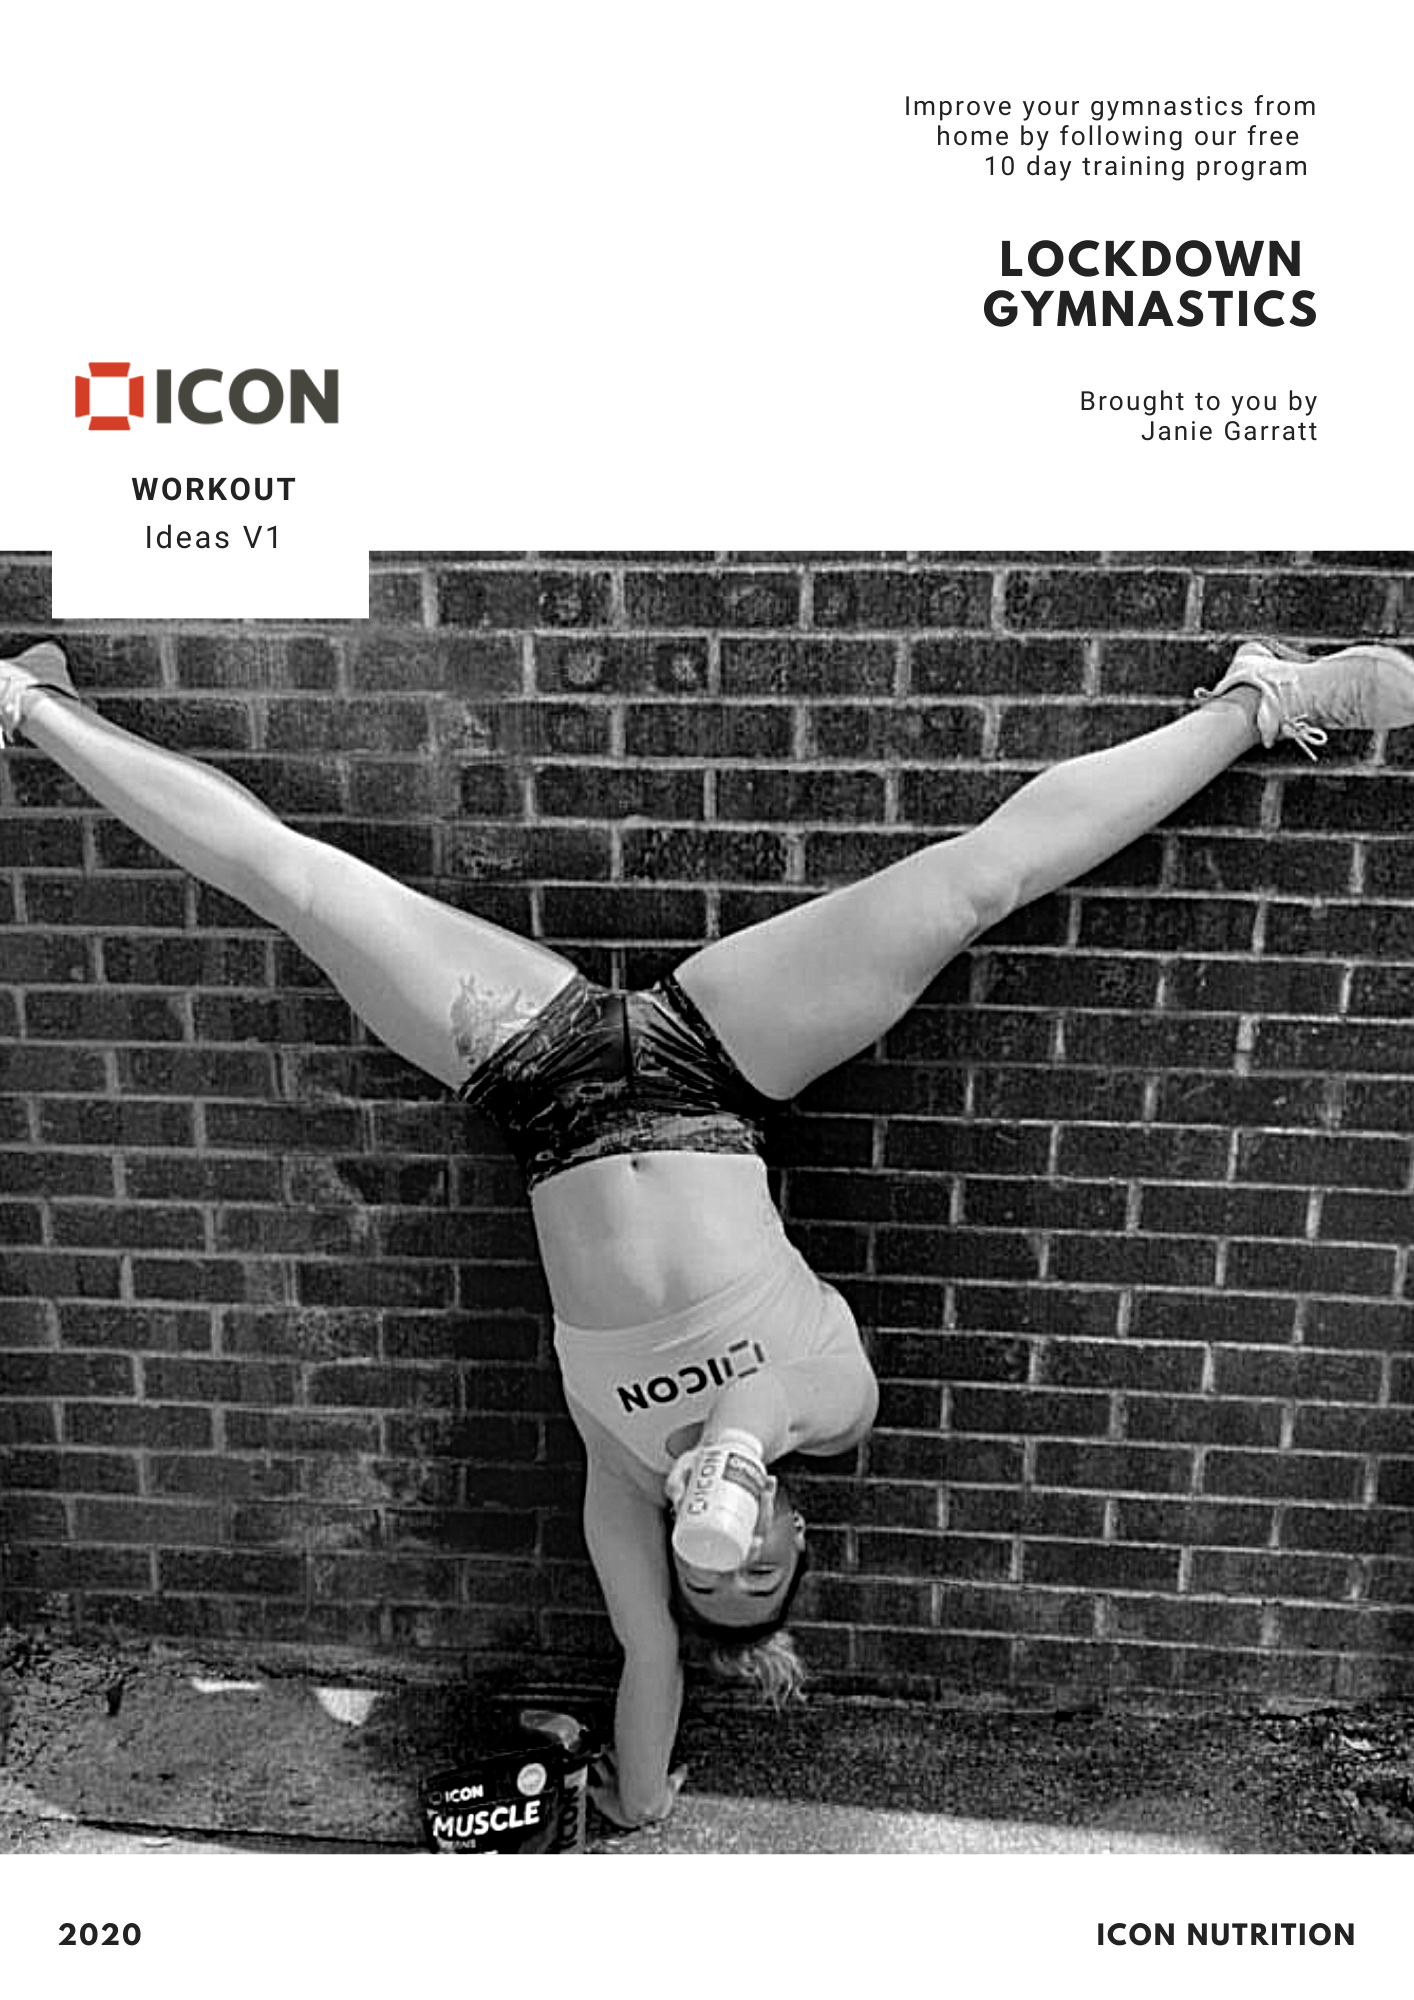 Lockdown Gymnastics - ICON Nutrition